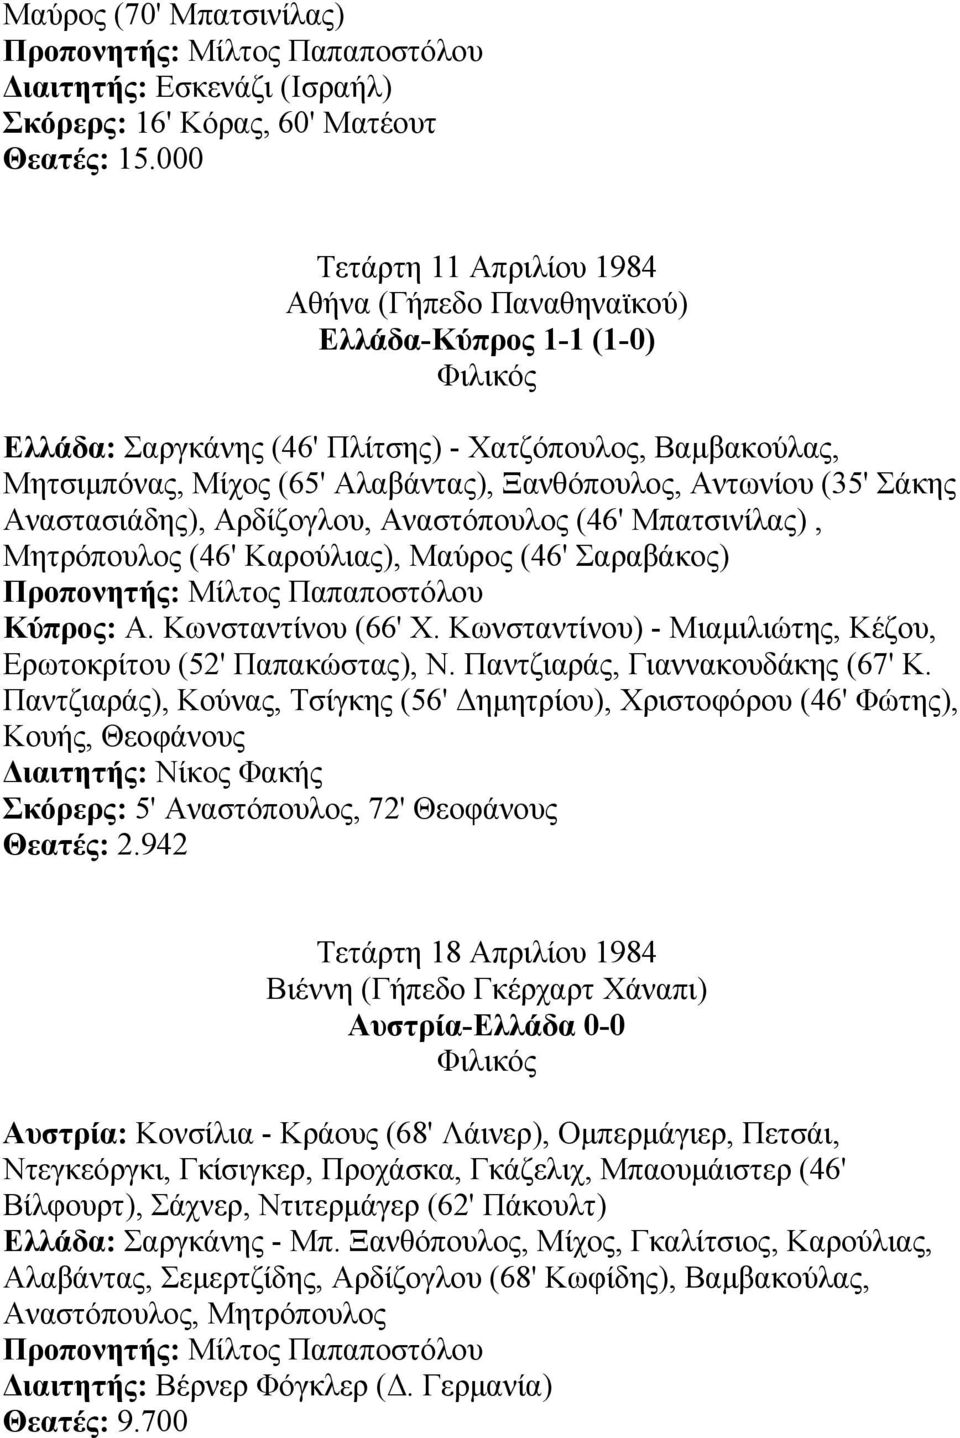 (35' Σάκης Αναστασιάδης), Αρδίζογλου, Αναστόπουλος (46' Μπατσινίλας), Μητρόπουλος (46' Καρούλιας), Μαύρος (46' Σαραβάκος) Κύπρος: Α. Κωνσταντίνου (66' Χ.